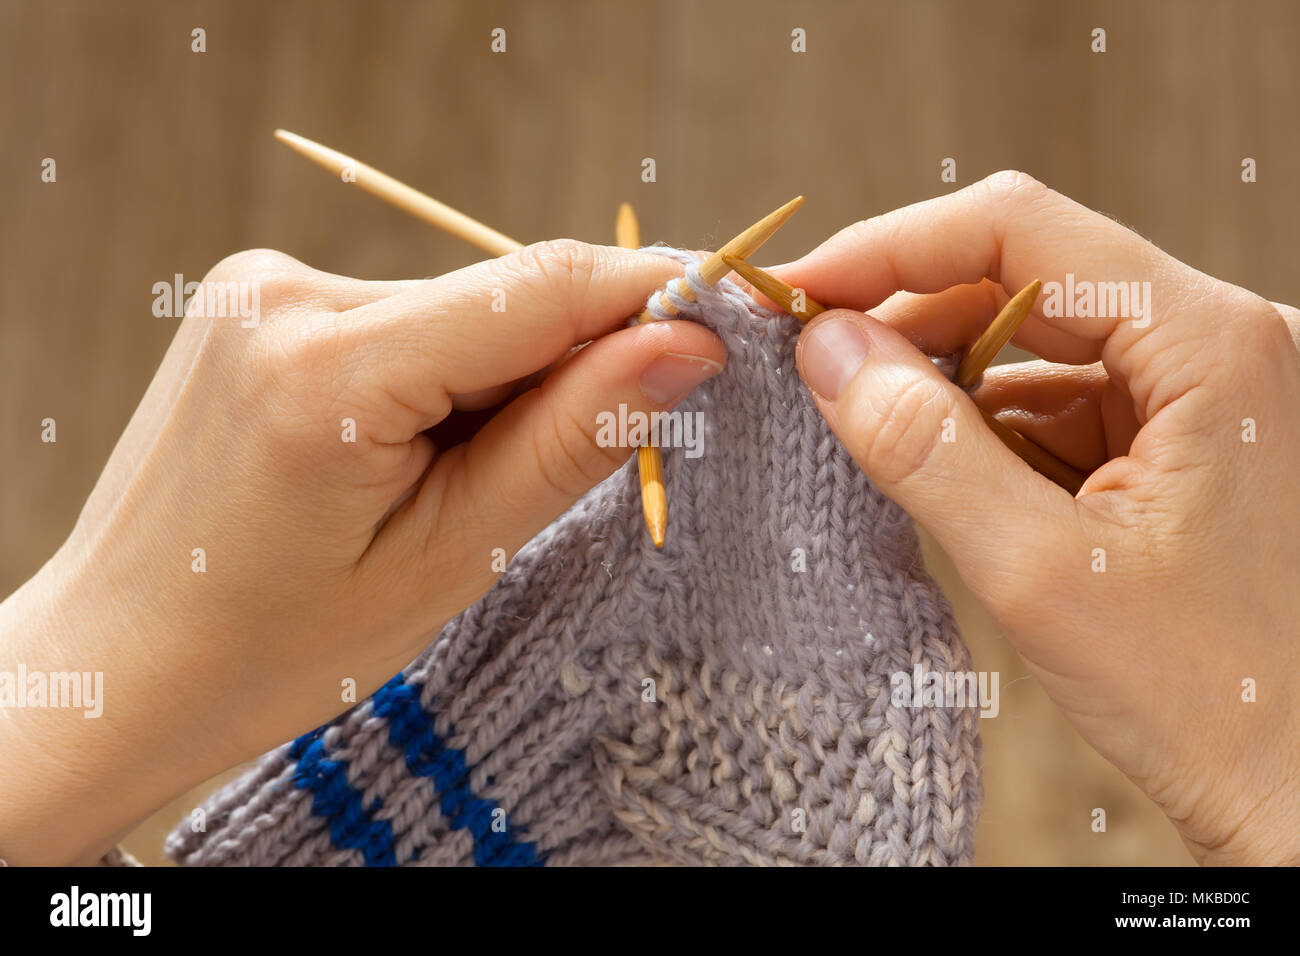 Mains de femme tricotant une chaussette avec aiguilles bambou Banque D'Images